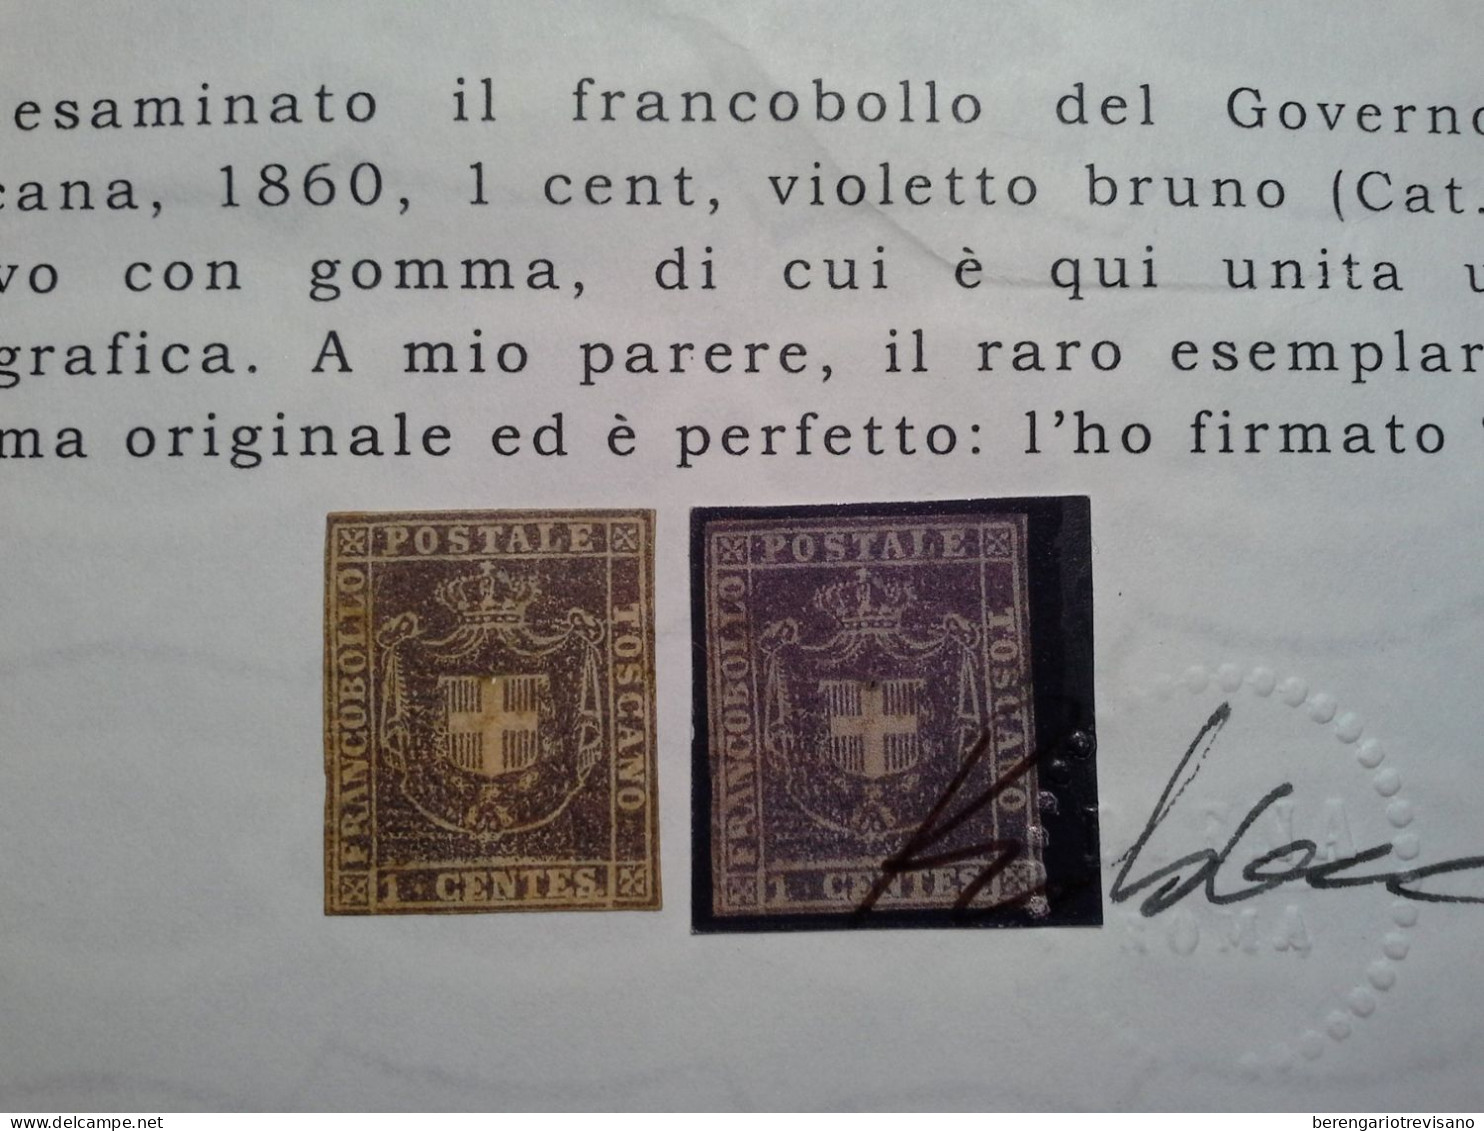 Regno d'Italia 1860 - Toscana 1 cent. marrone violaceo Raro - 2 certificati